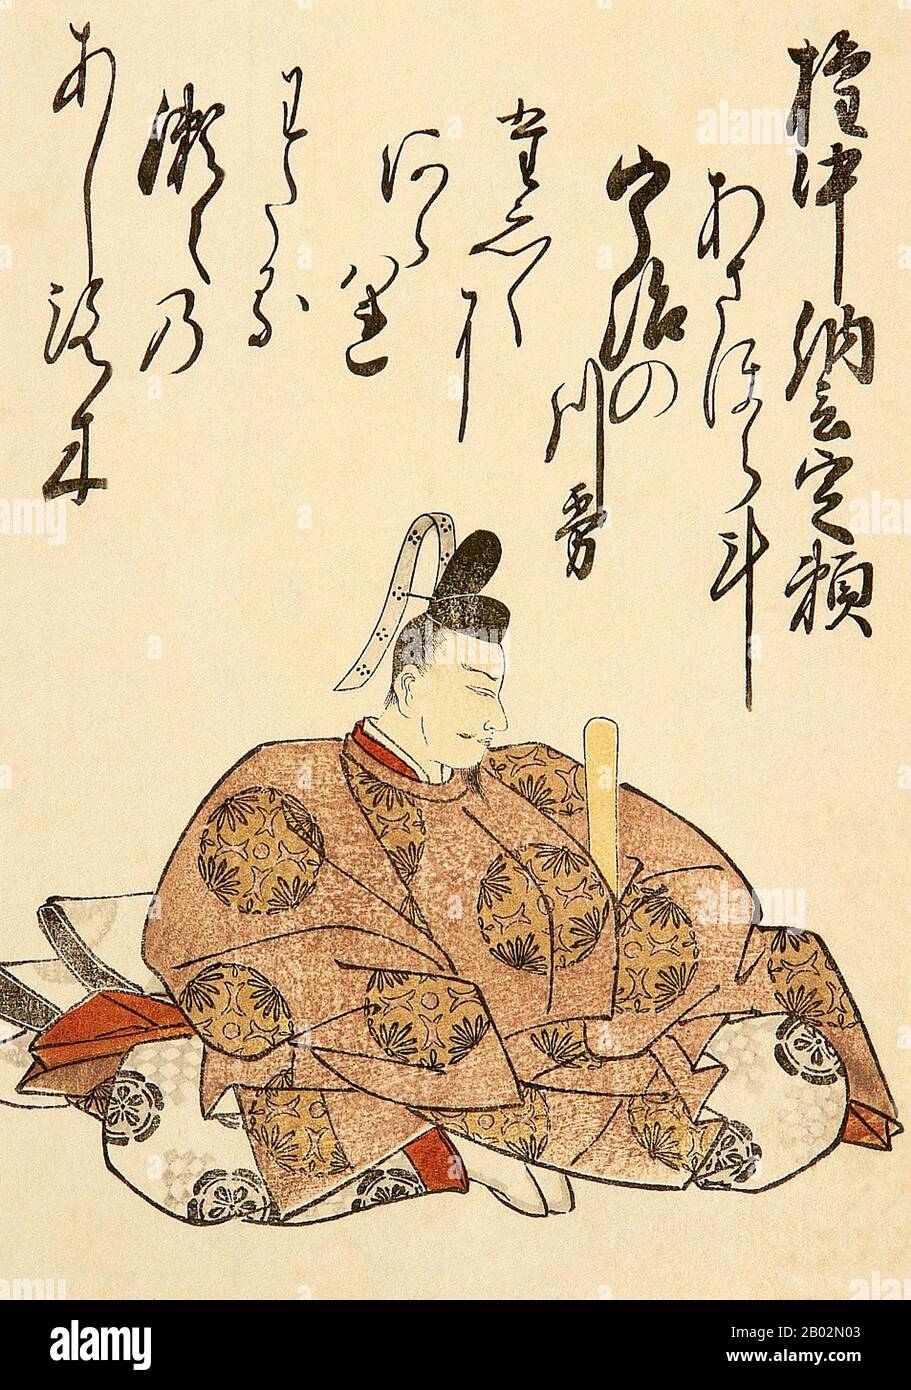 L'empereur Seiwa (清和天皇 Seiwa-tennō, 850–878) était le 56ème empereur du Japon, selon l'ordre traditionnel de succession. Le règne de Seiwa a duré de 858 à 876 ans. Shuncho Katsukawa est né à Edo et est un élève de Shunsho Katsukawa. Shuncho est célèbre pour ses reproductions d'acteurs et de bijin, belles femmes. Après 1795, Shuncho Katsukawa a abandonné la gravure et est devenu un écrivain de romans. Ce boisés de Fujiwara Sadayori est de sa série: 'Cent poèmes par Cent poètes'. Banque D'Images